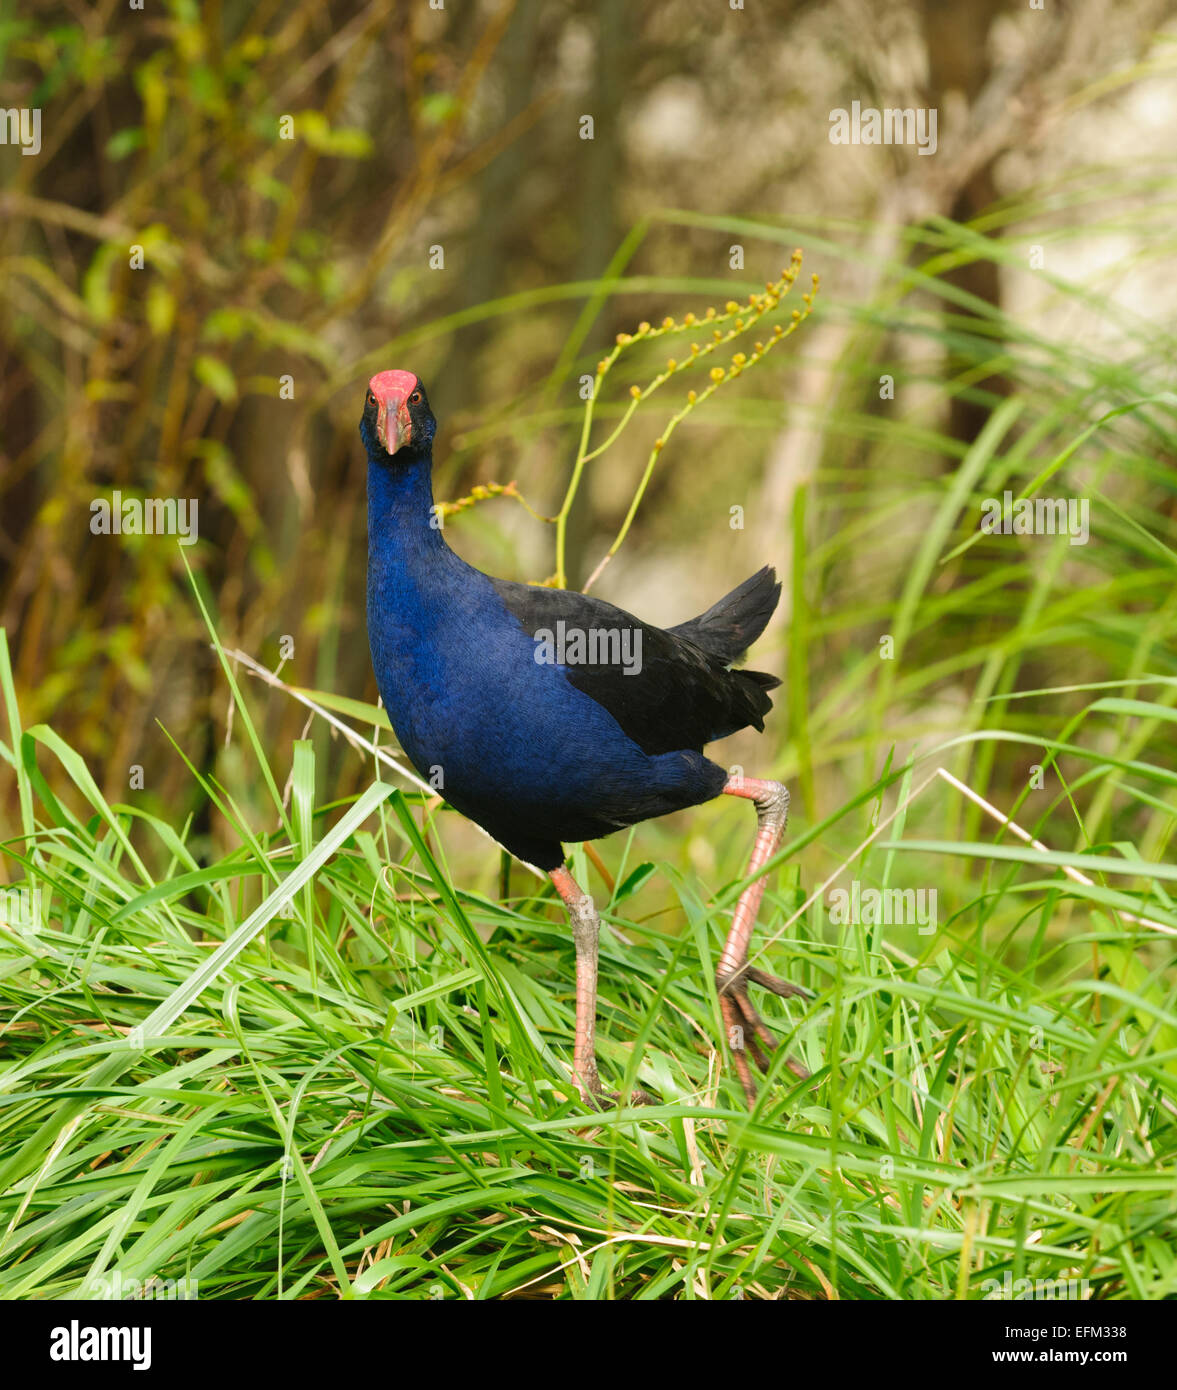 New Zealand Pukeko, a native bird in the wild Stock Photo